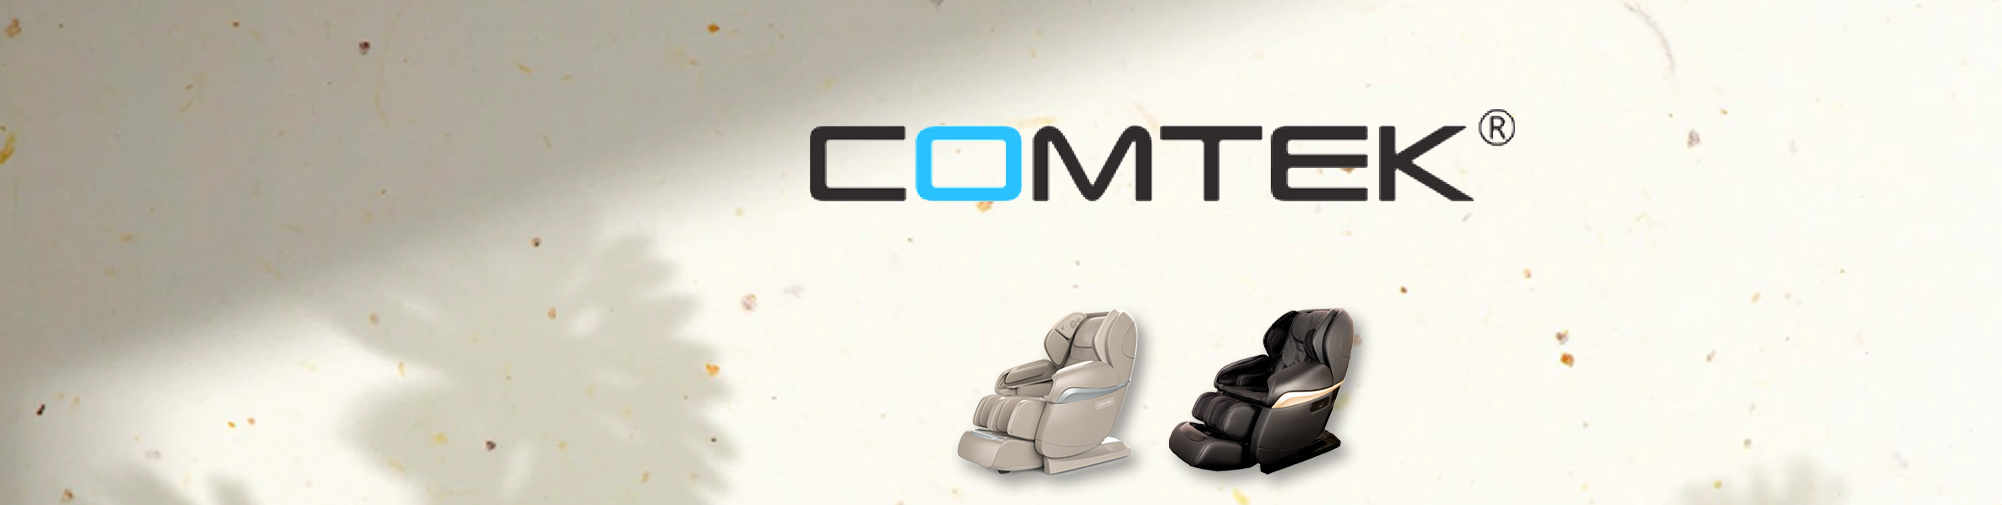 COMTEK – profesionalni originalni producent | Svijet stolica za masažu